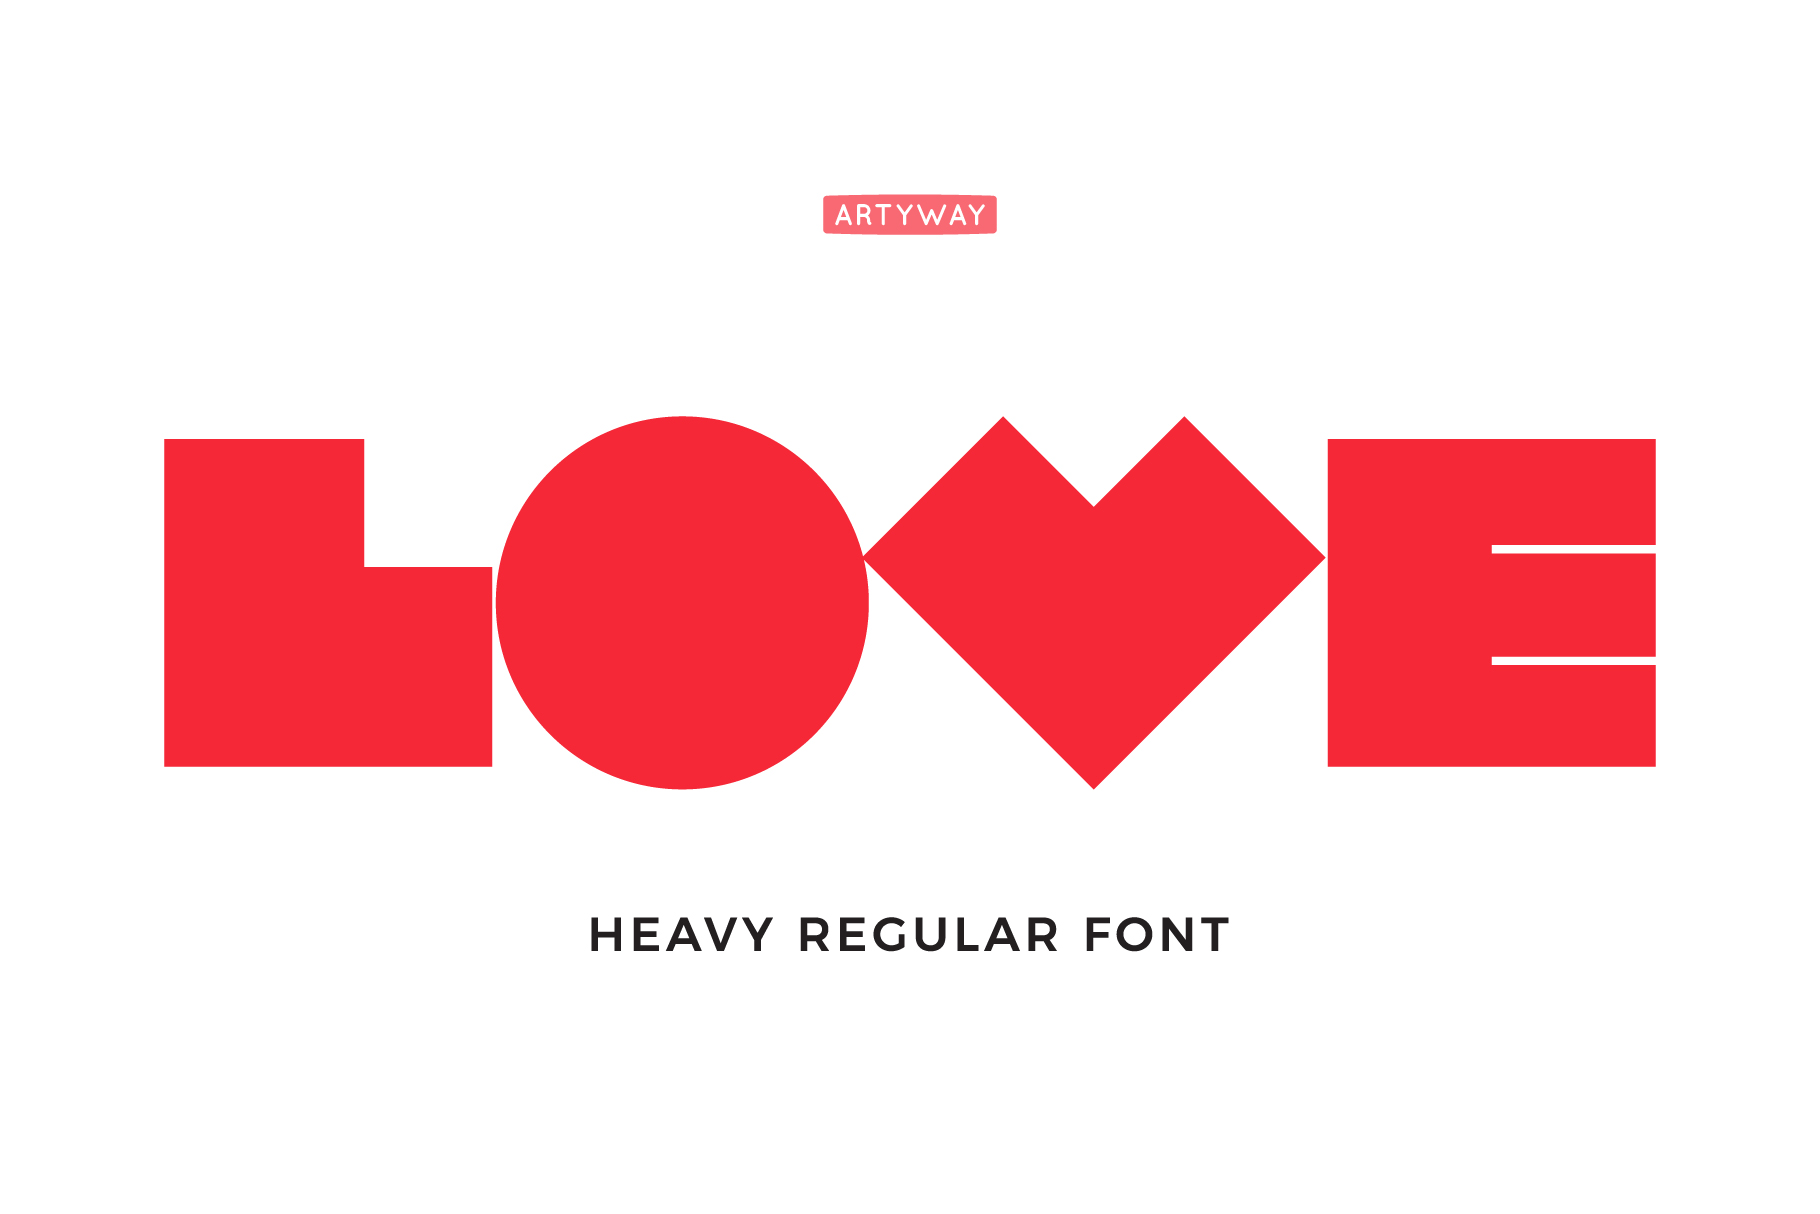 Heavy regular font.